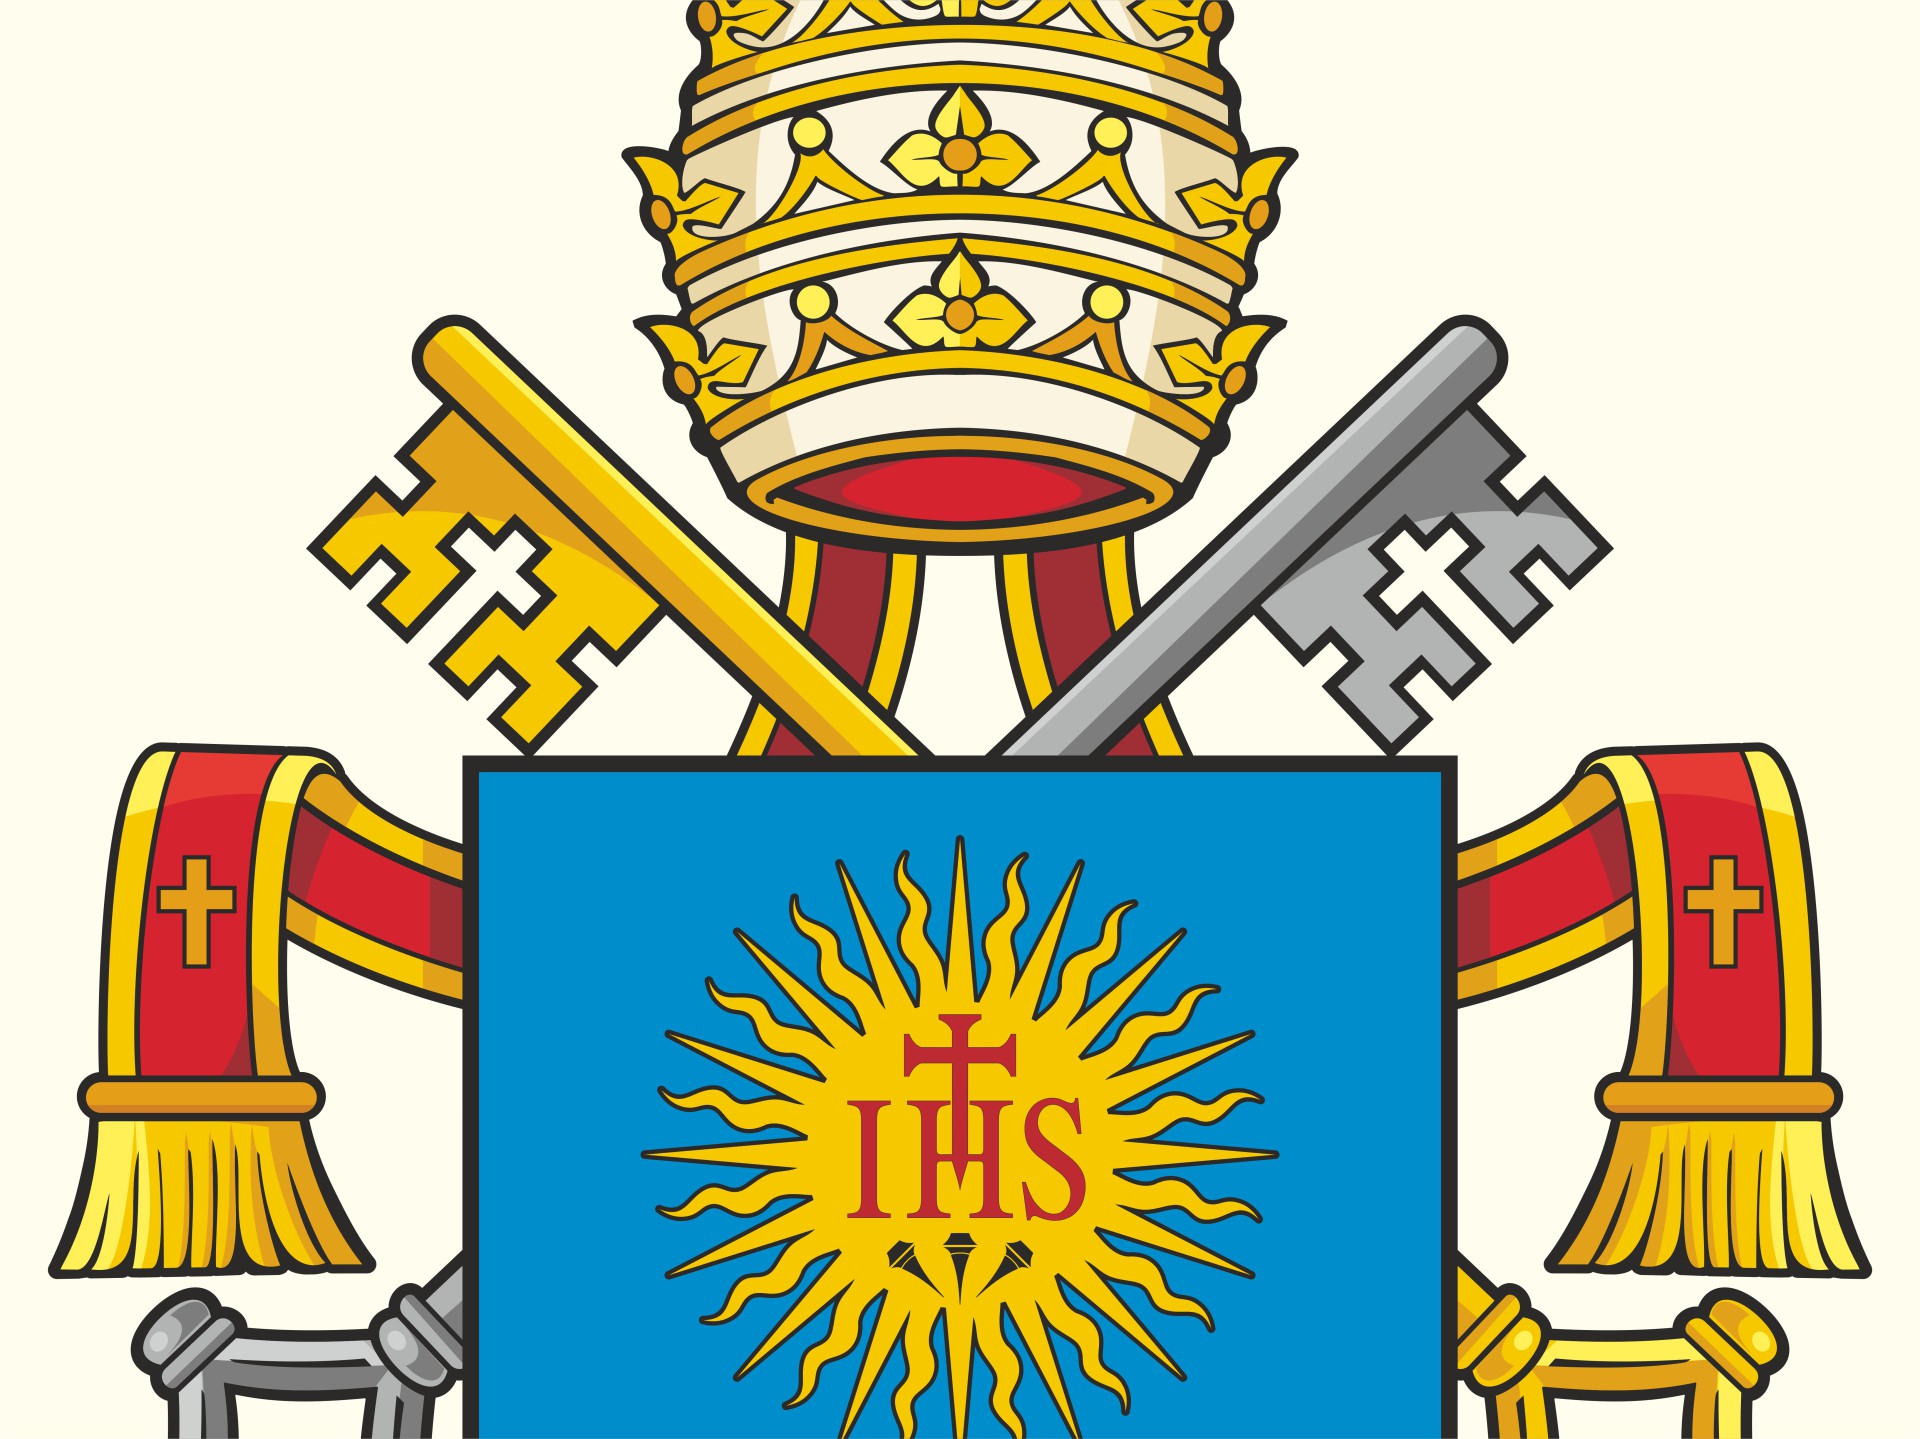 Crkvena heraldika